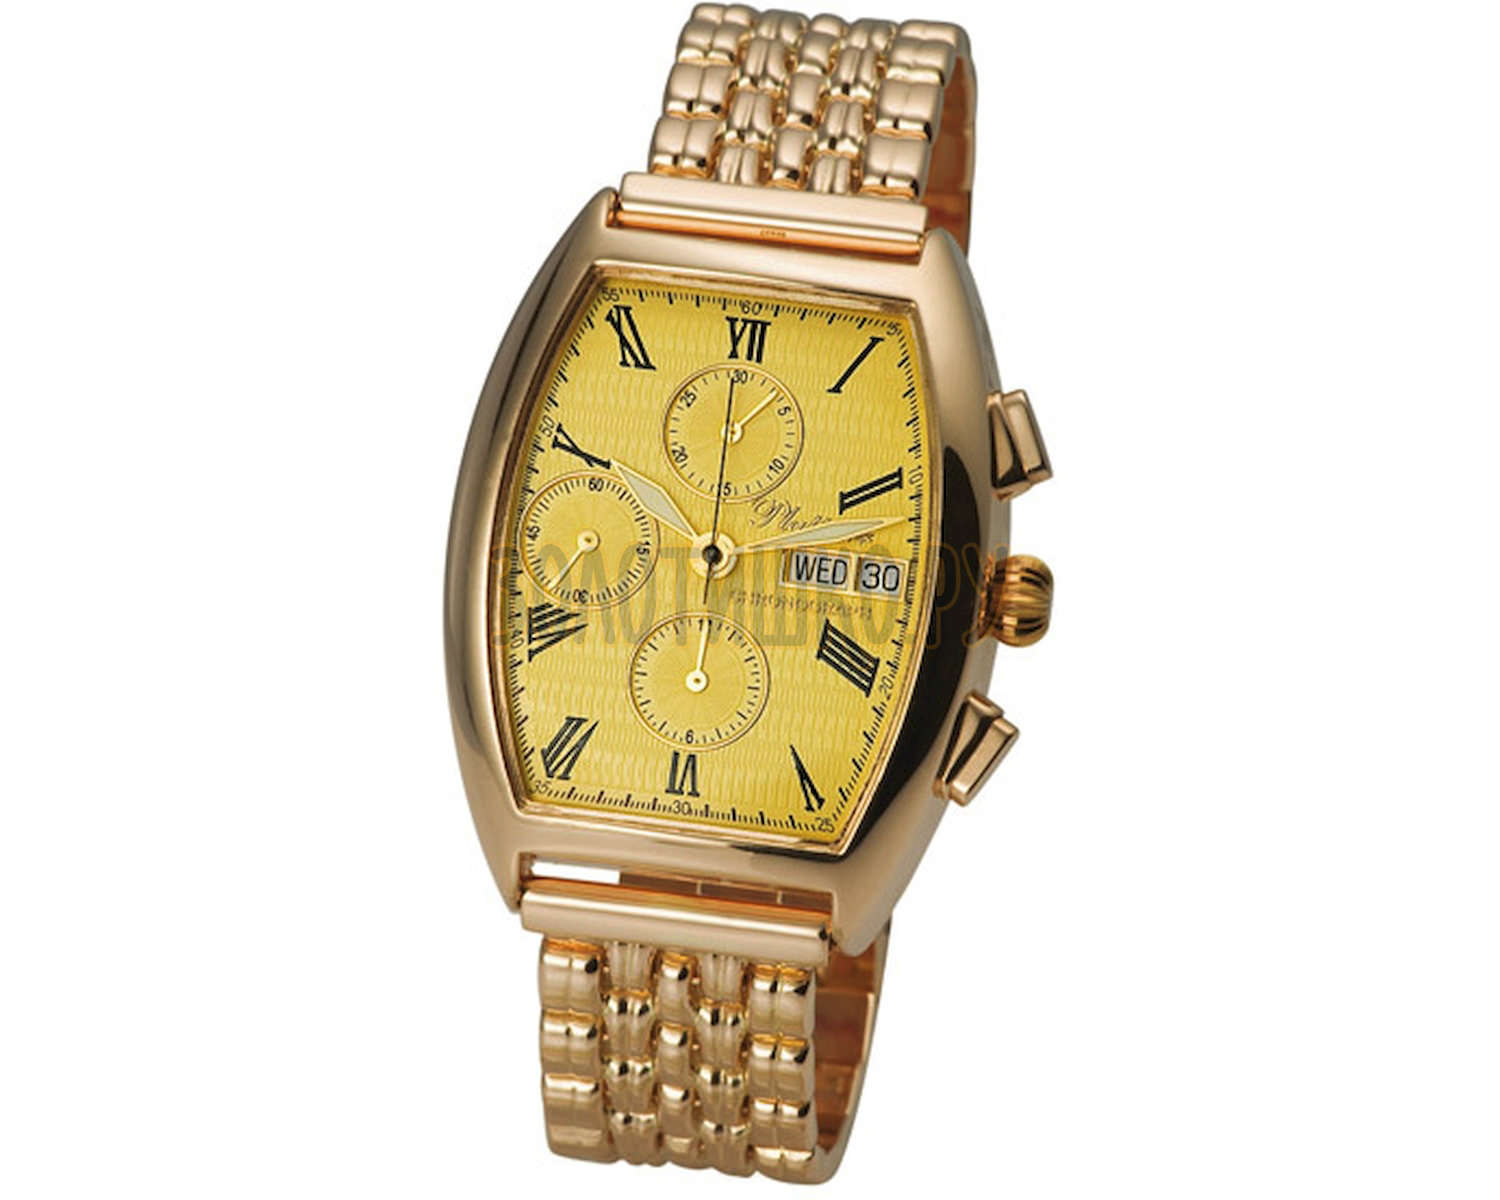 Золотые часы мужские с золотым браслетом купить. Золотые часы Platinor мужские хронограф. Золотые часы 585 проба (1093.0.1.41a). Часы Платинор золотые мужские 585. Золотые часы Голд тайм модель 8020.